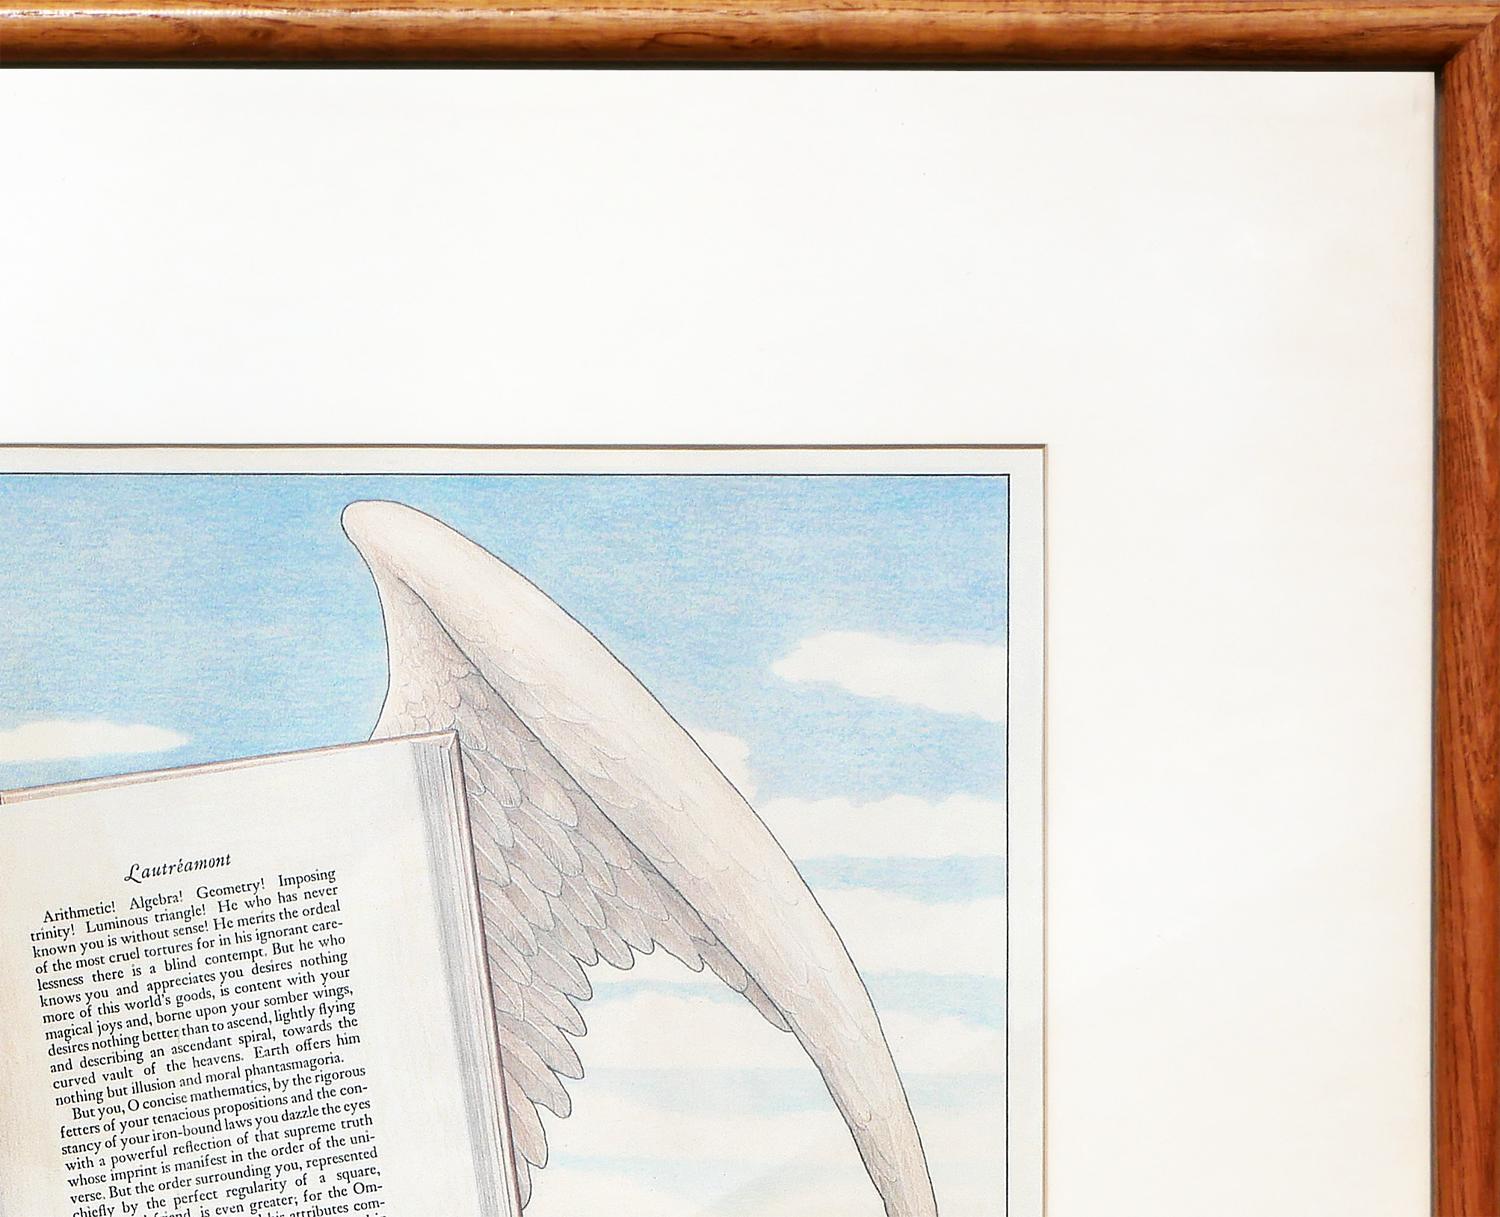 Abstrakte surrealistische Zeichnung in Pastellgrün, Blau, Grau und Weiß des Künstlers T. Moore. Das Werk zeigt ein schwebendes Buch mit Flügeln vor einer üppigen und heiteren Landschaft mit einem markanten Obelisken auf der rechten Seite. Unten